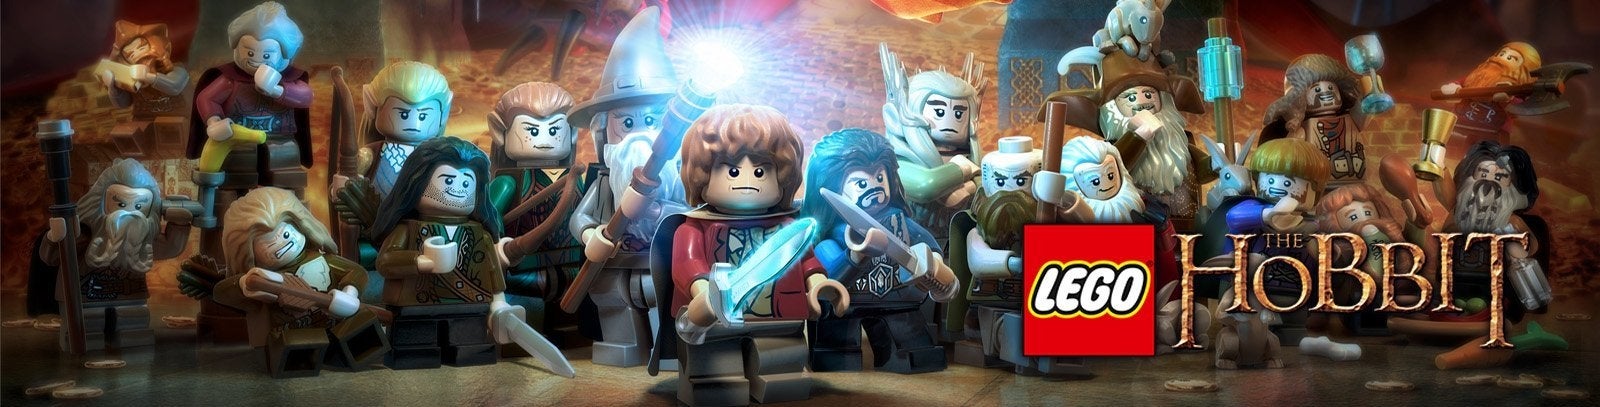 Bilder zu Lego Der Hobbit Cheats, Tipps & Tricks (PC, PS3, PS4, Xbox, Wii U, 3DS)